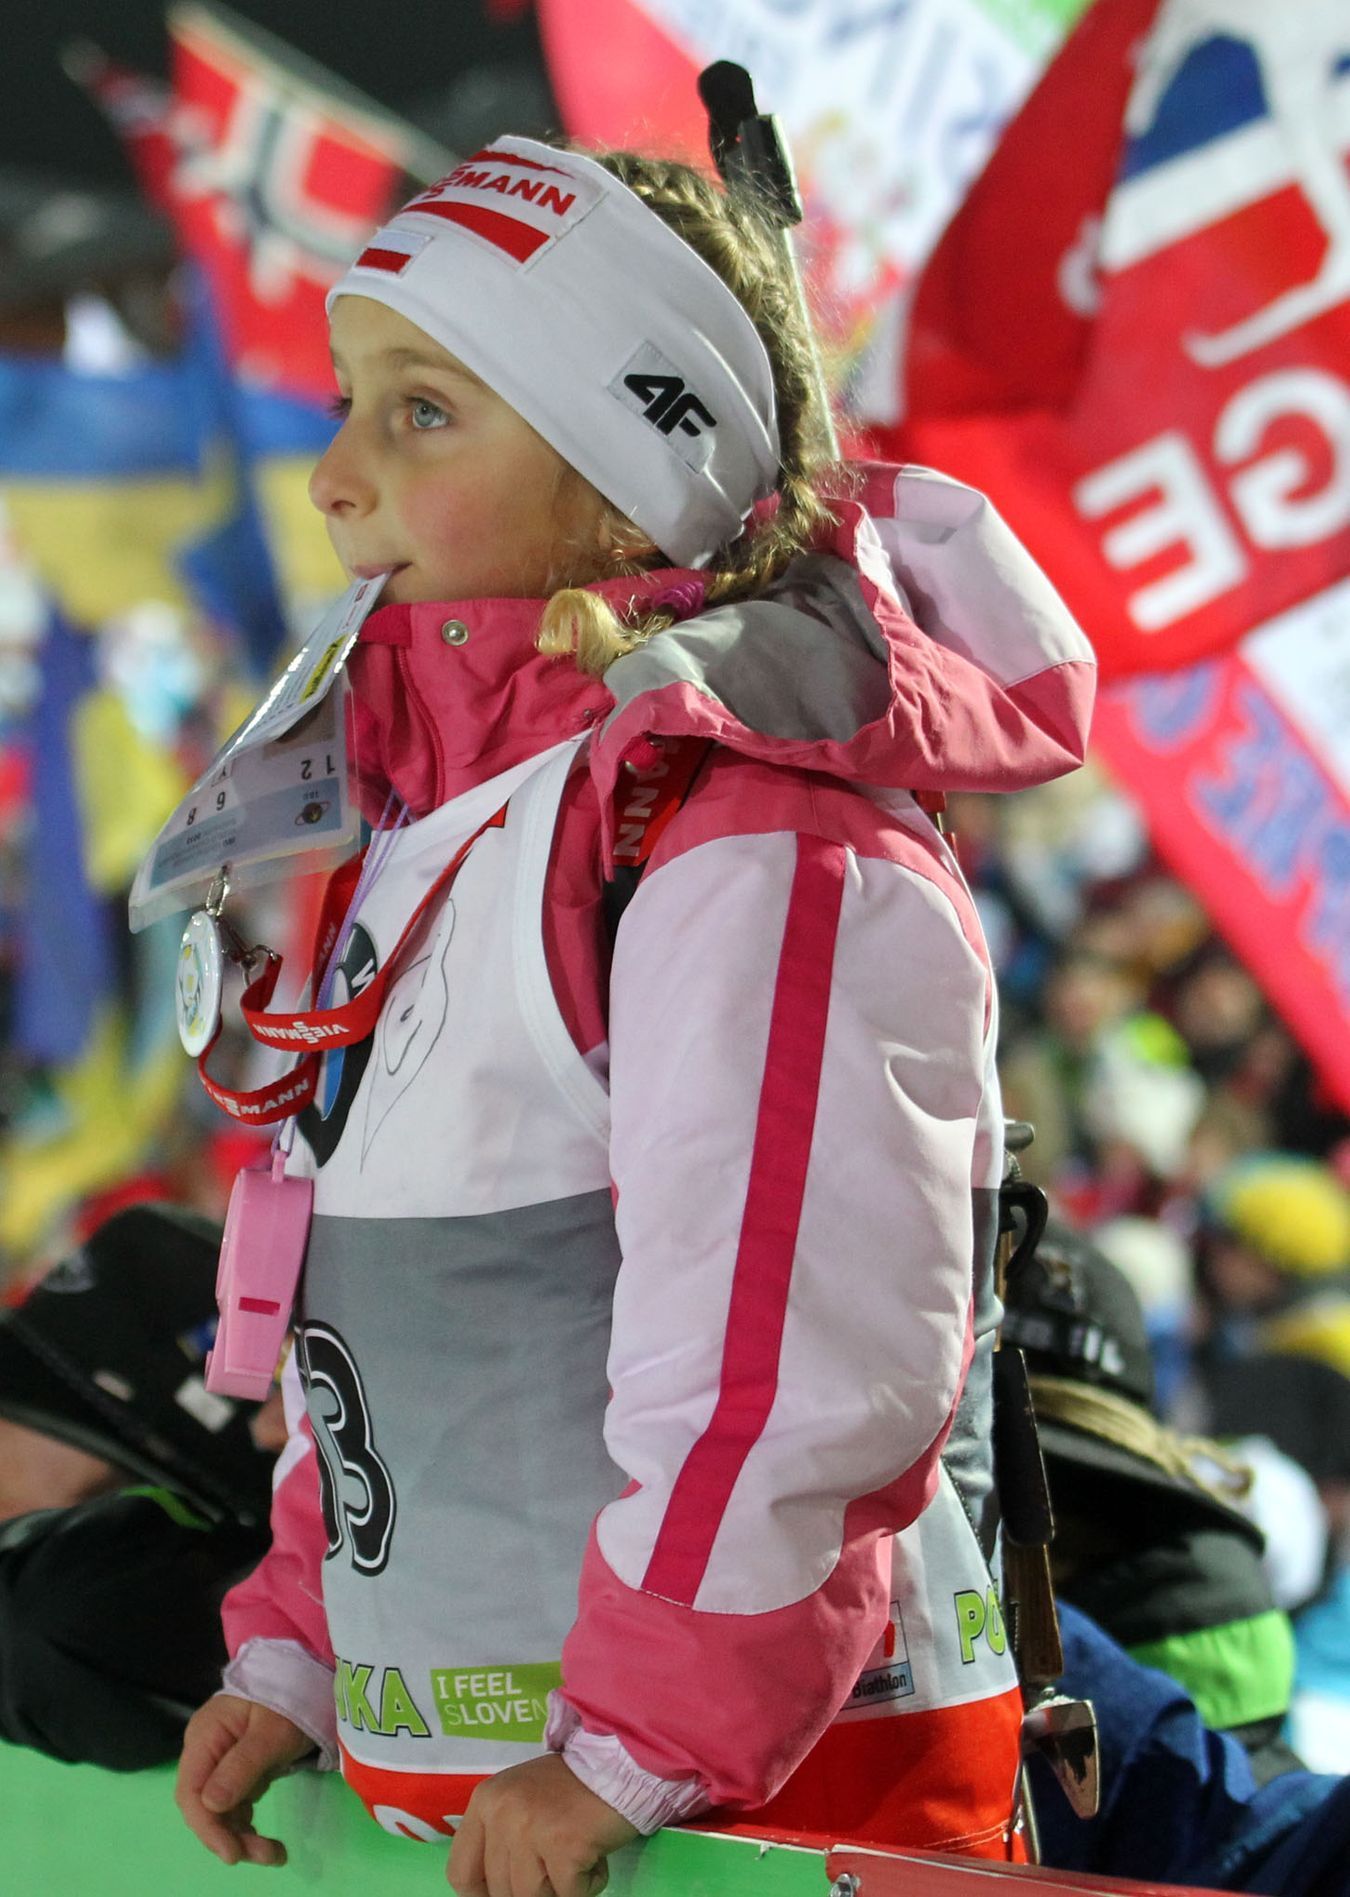 MS v biatlonu 2012, štafeta žen: malý fanoušek